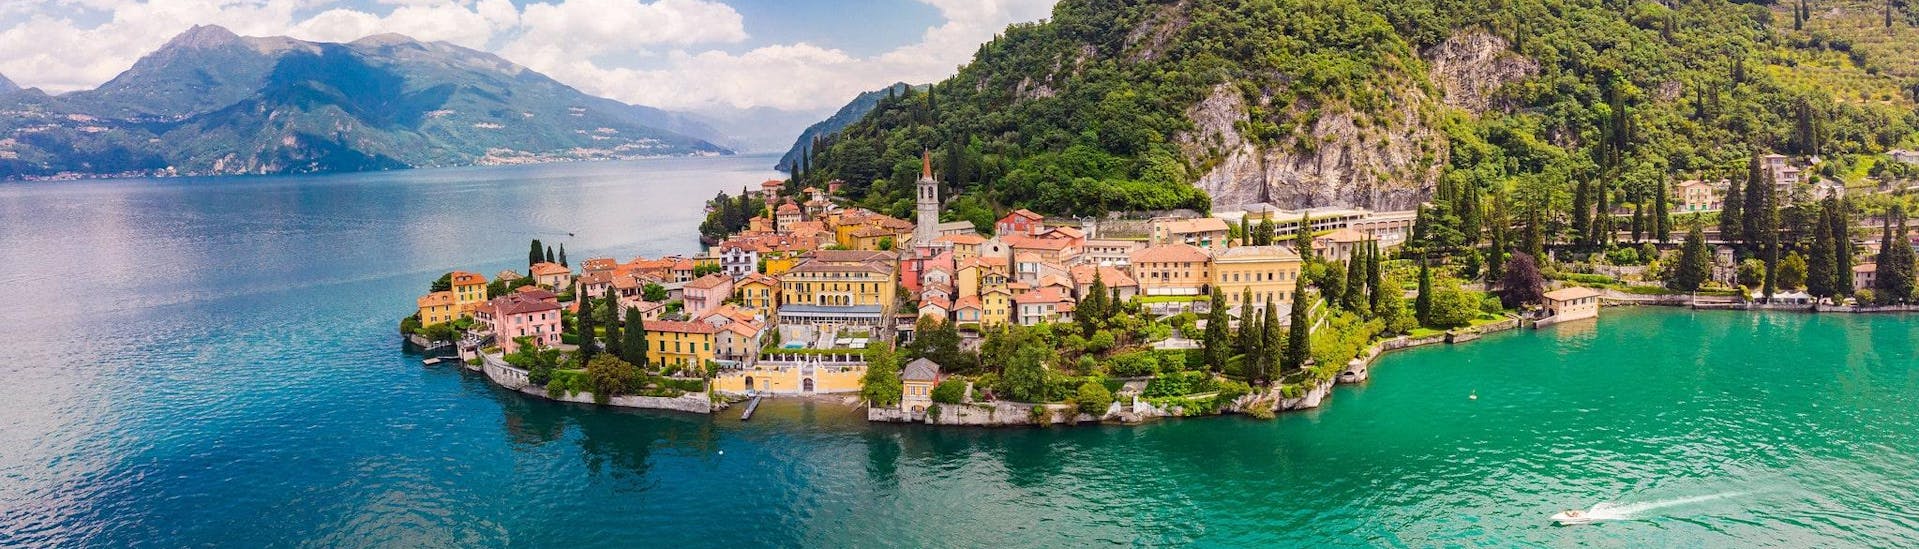 Immagine del lago di Como e della sua splendida città in Gite in barca sul lago di Como.